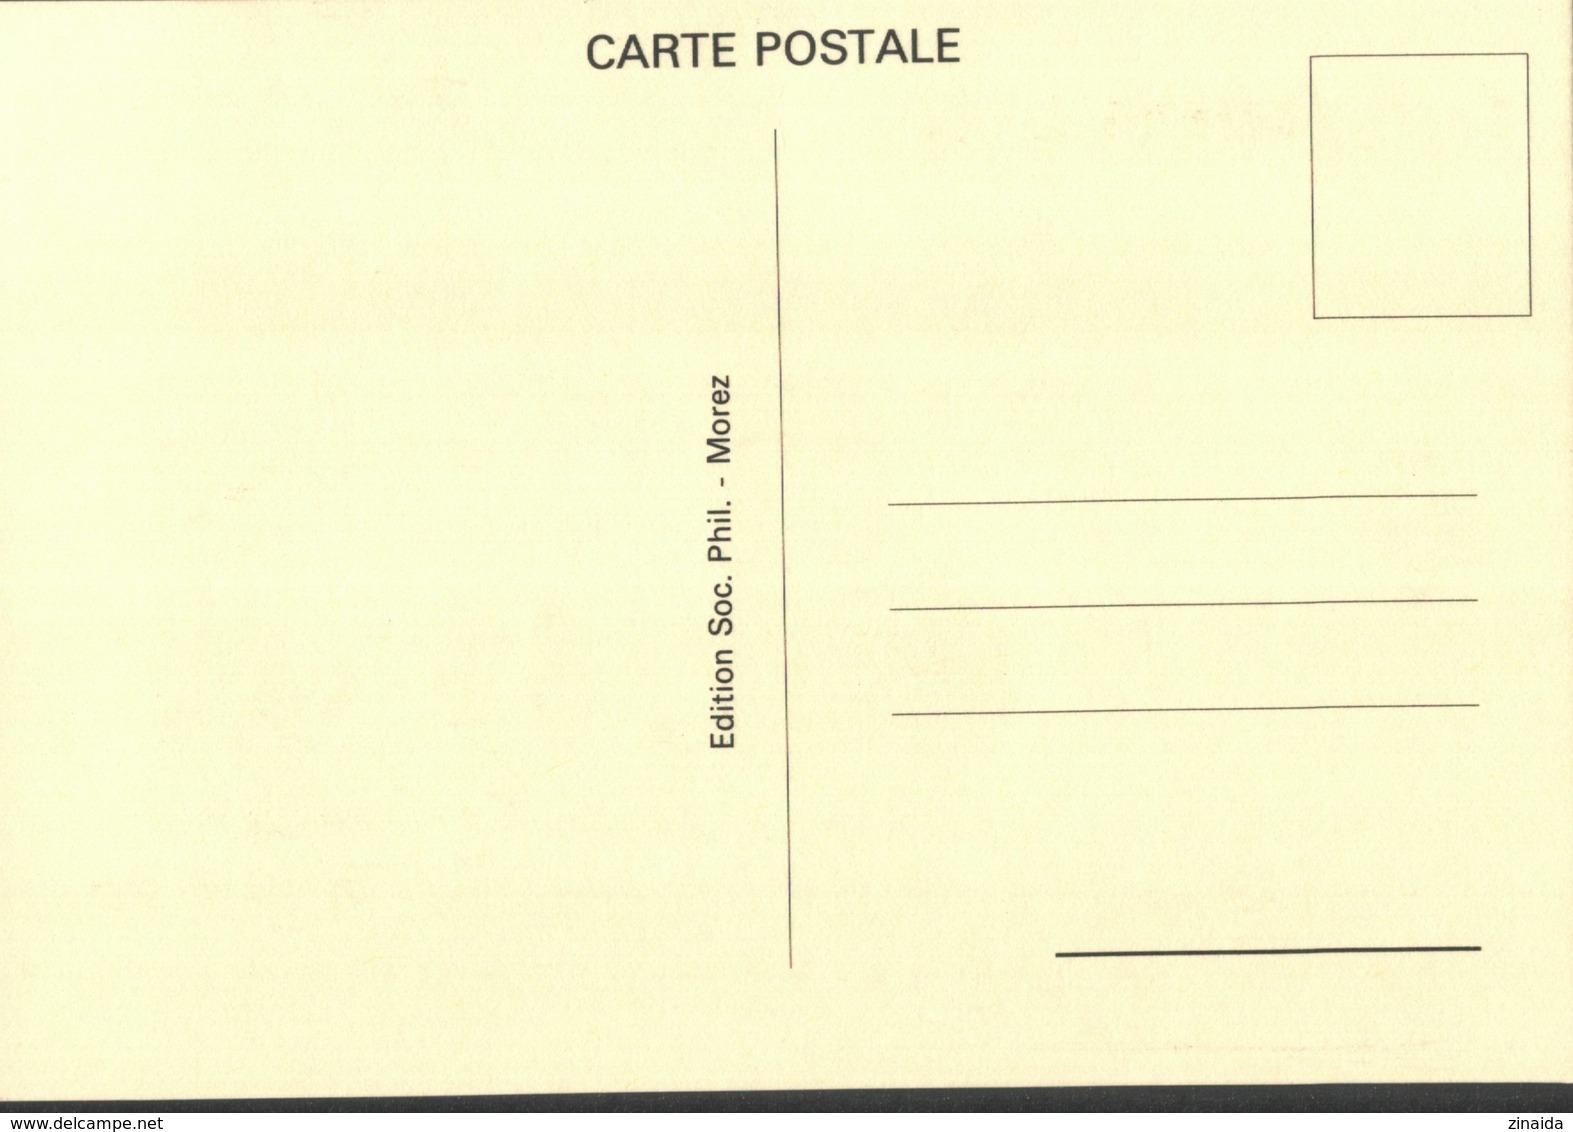 CARTE POSTALE PREMIER JOUR - LONGCHAUMOIS XVIIéme FETE DU HAUT-JURA - 1990-1999